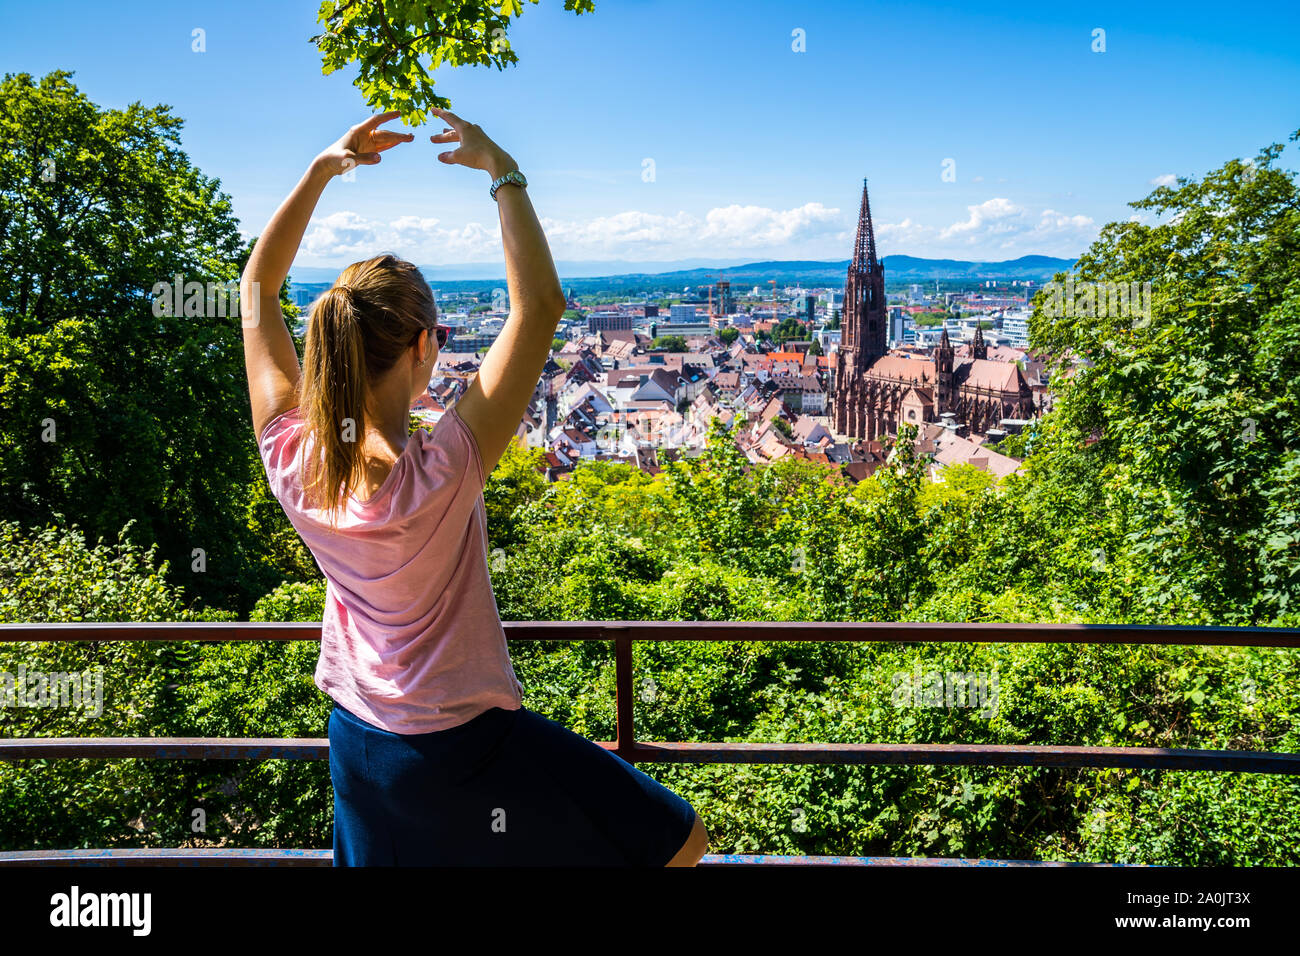 Germania, donna bionda con la coda di cavallo facendo yoga meditazione sopra città Freiburg im Breisgau e skyline con minster cathedral in estate circondata da g Foto Stock